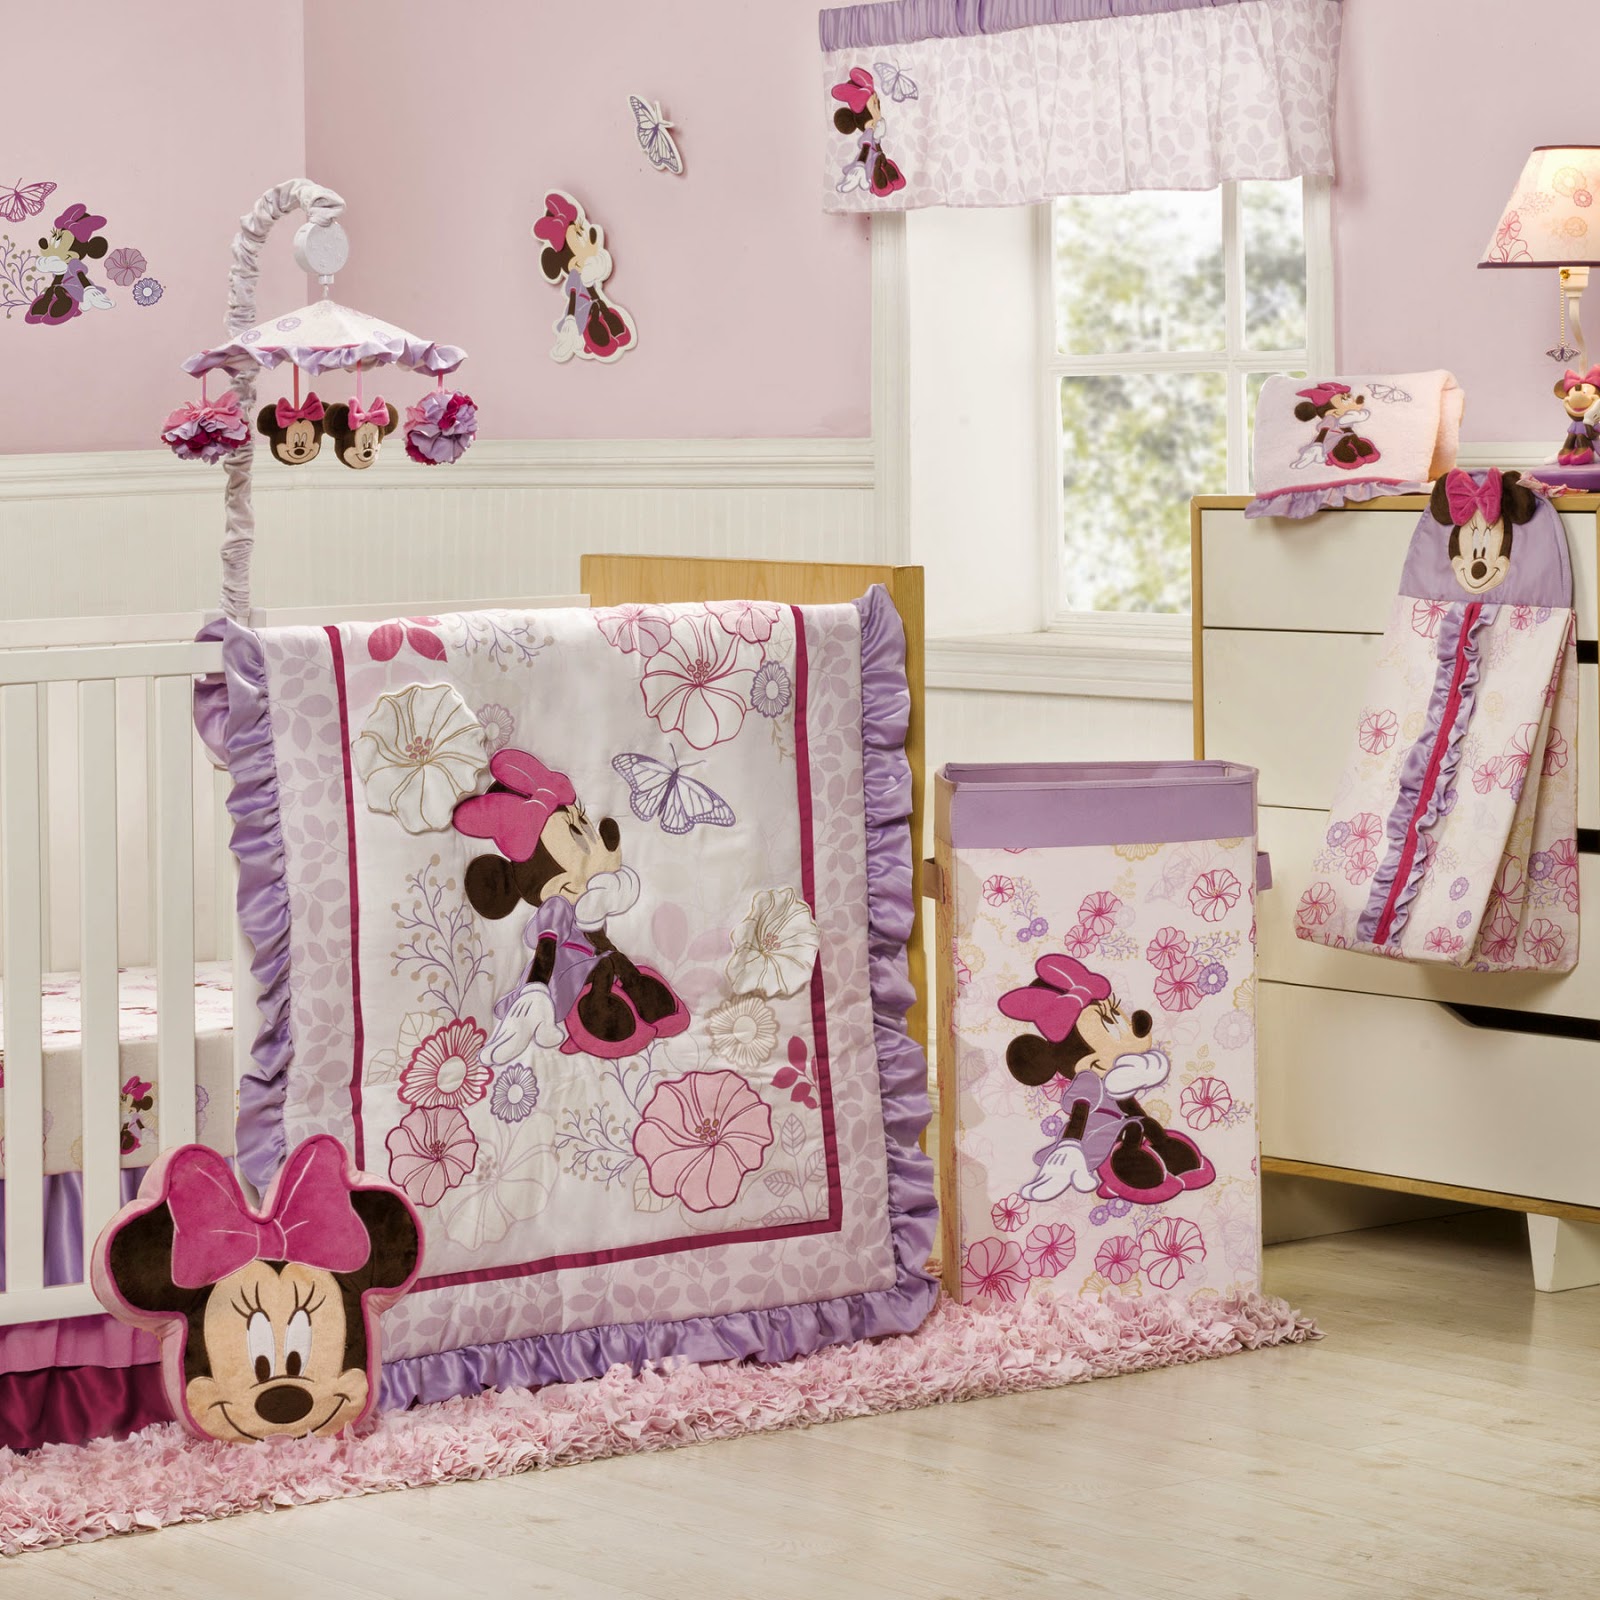 Dormitorios para bebés tema Minnie - Ideas para decorar dormitorios